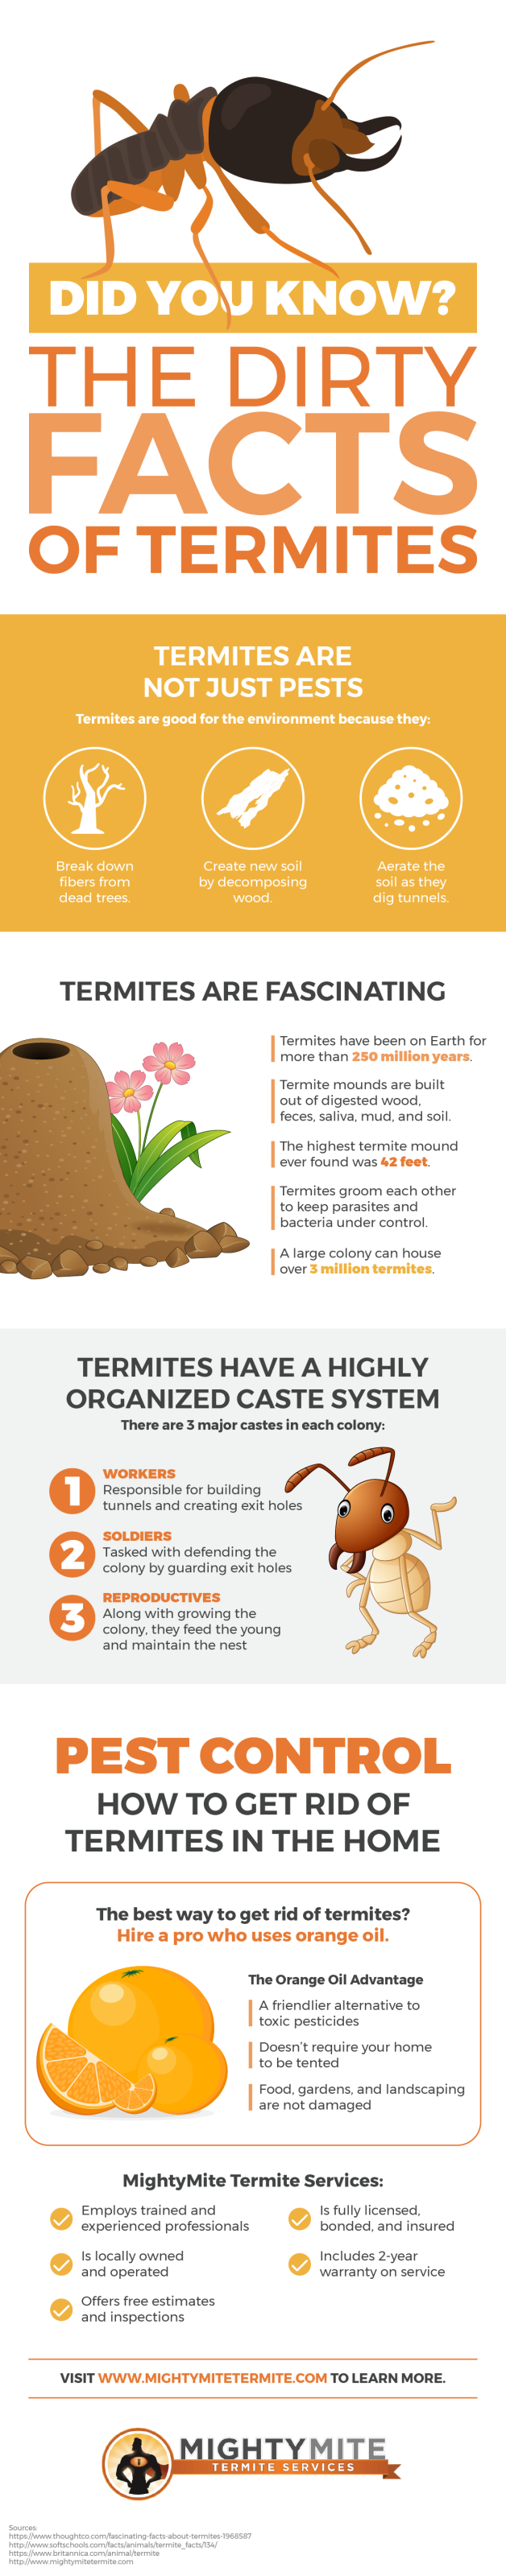 Termites are fascinating creatures